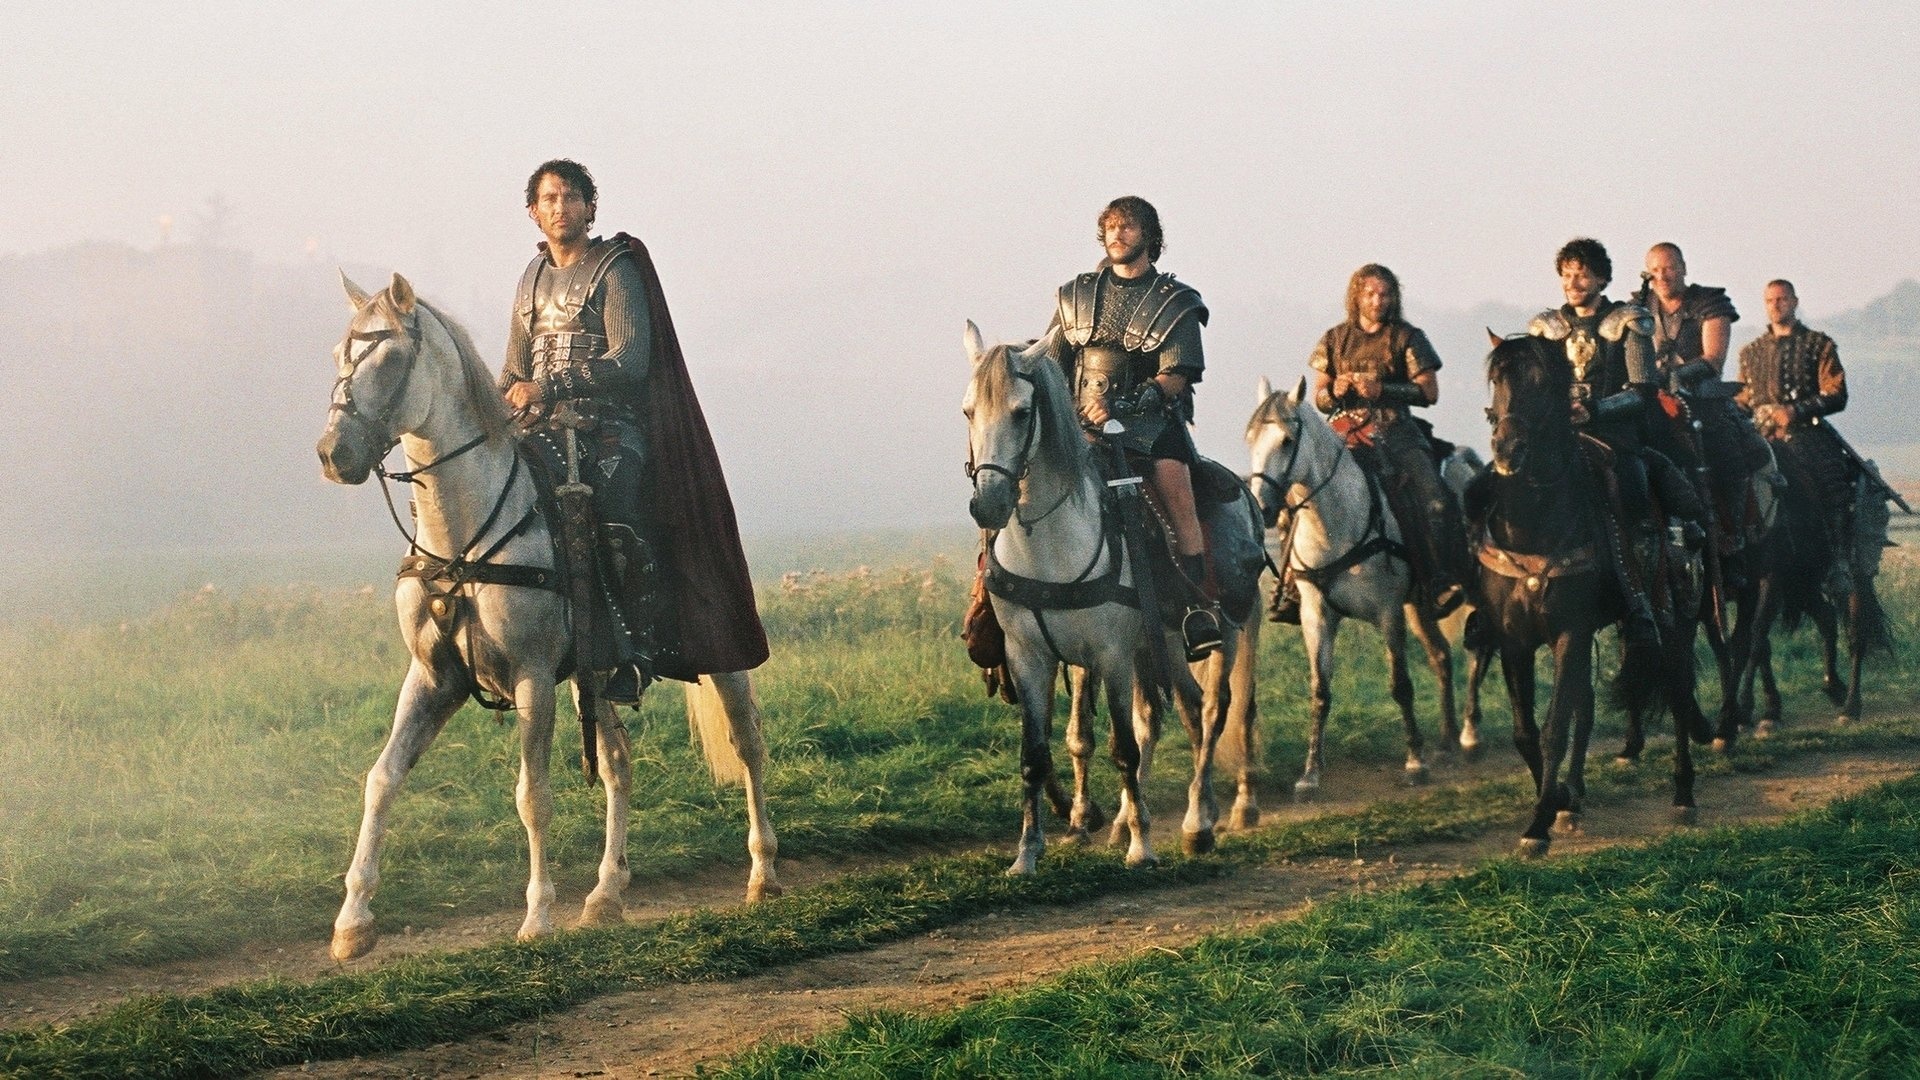 King Arthur 2004 movie, Arthurian legend, Knights of Camelot, Medieval fantasy, 1920x1080 Full HD Desktop